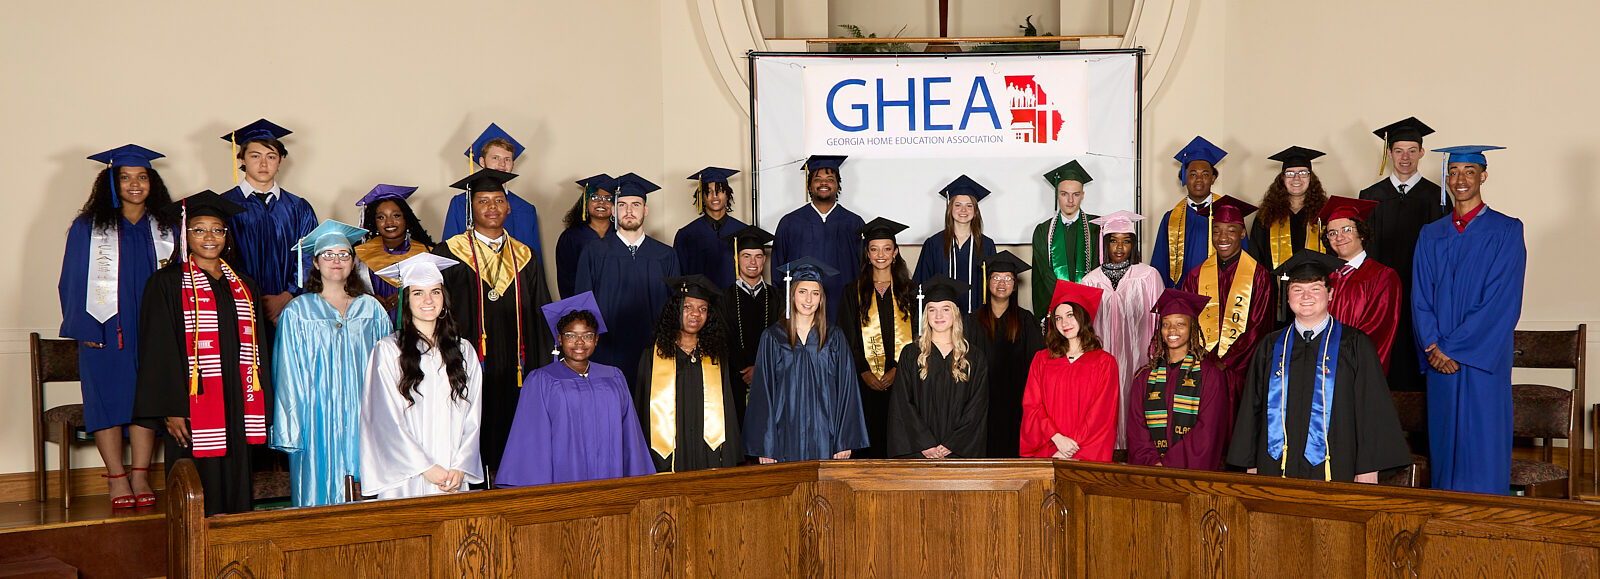 2018 GHEA Graduation Ceremony | Georgia Home Education Association